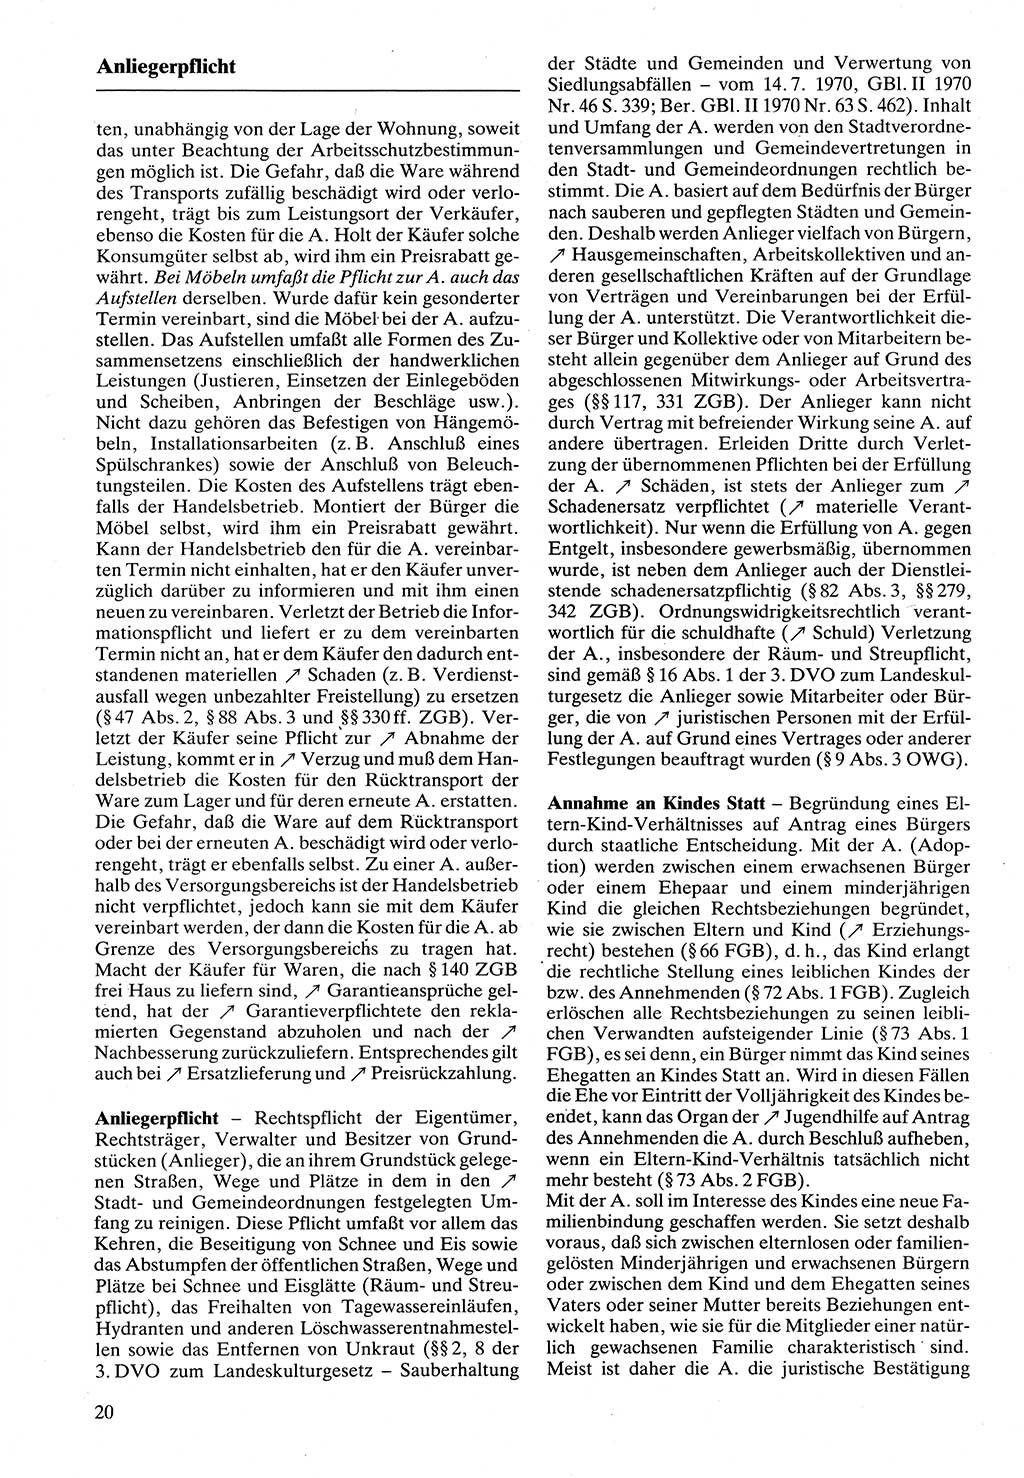 Rechtslexikon [Deutsche Demokratische Republik (DDR)] 1988, Seite 20 (Rechtslex. DDR 1988, S. 20)